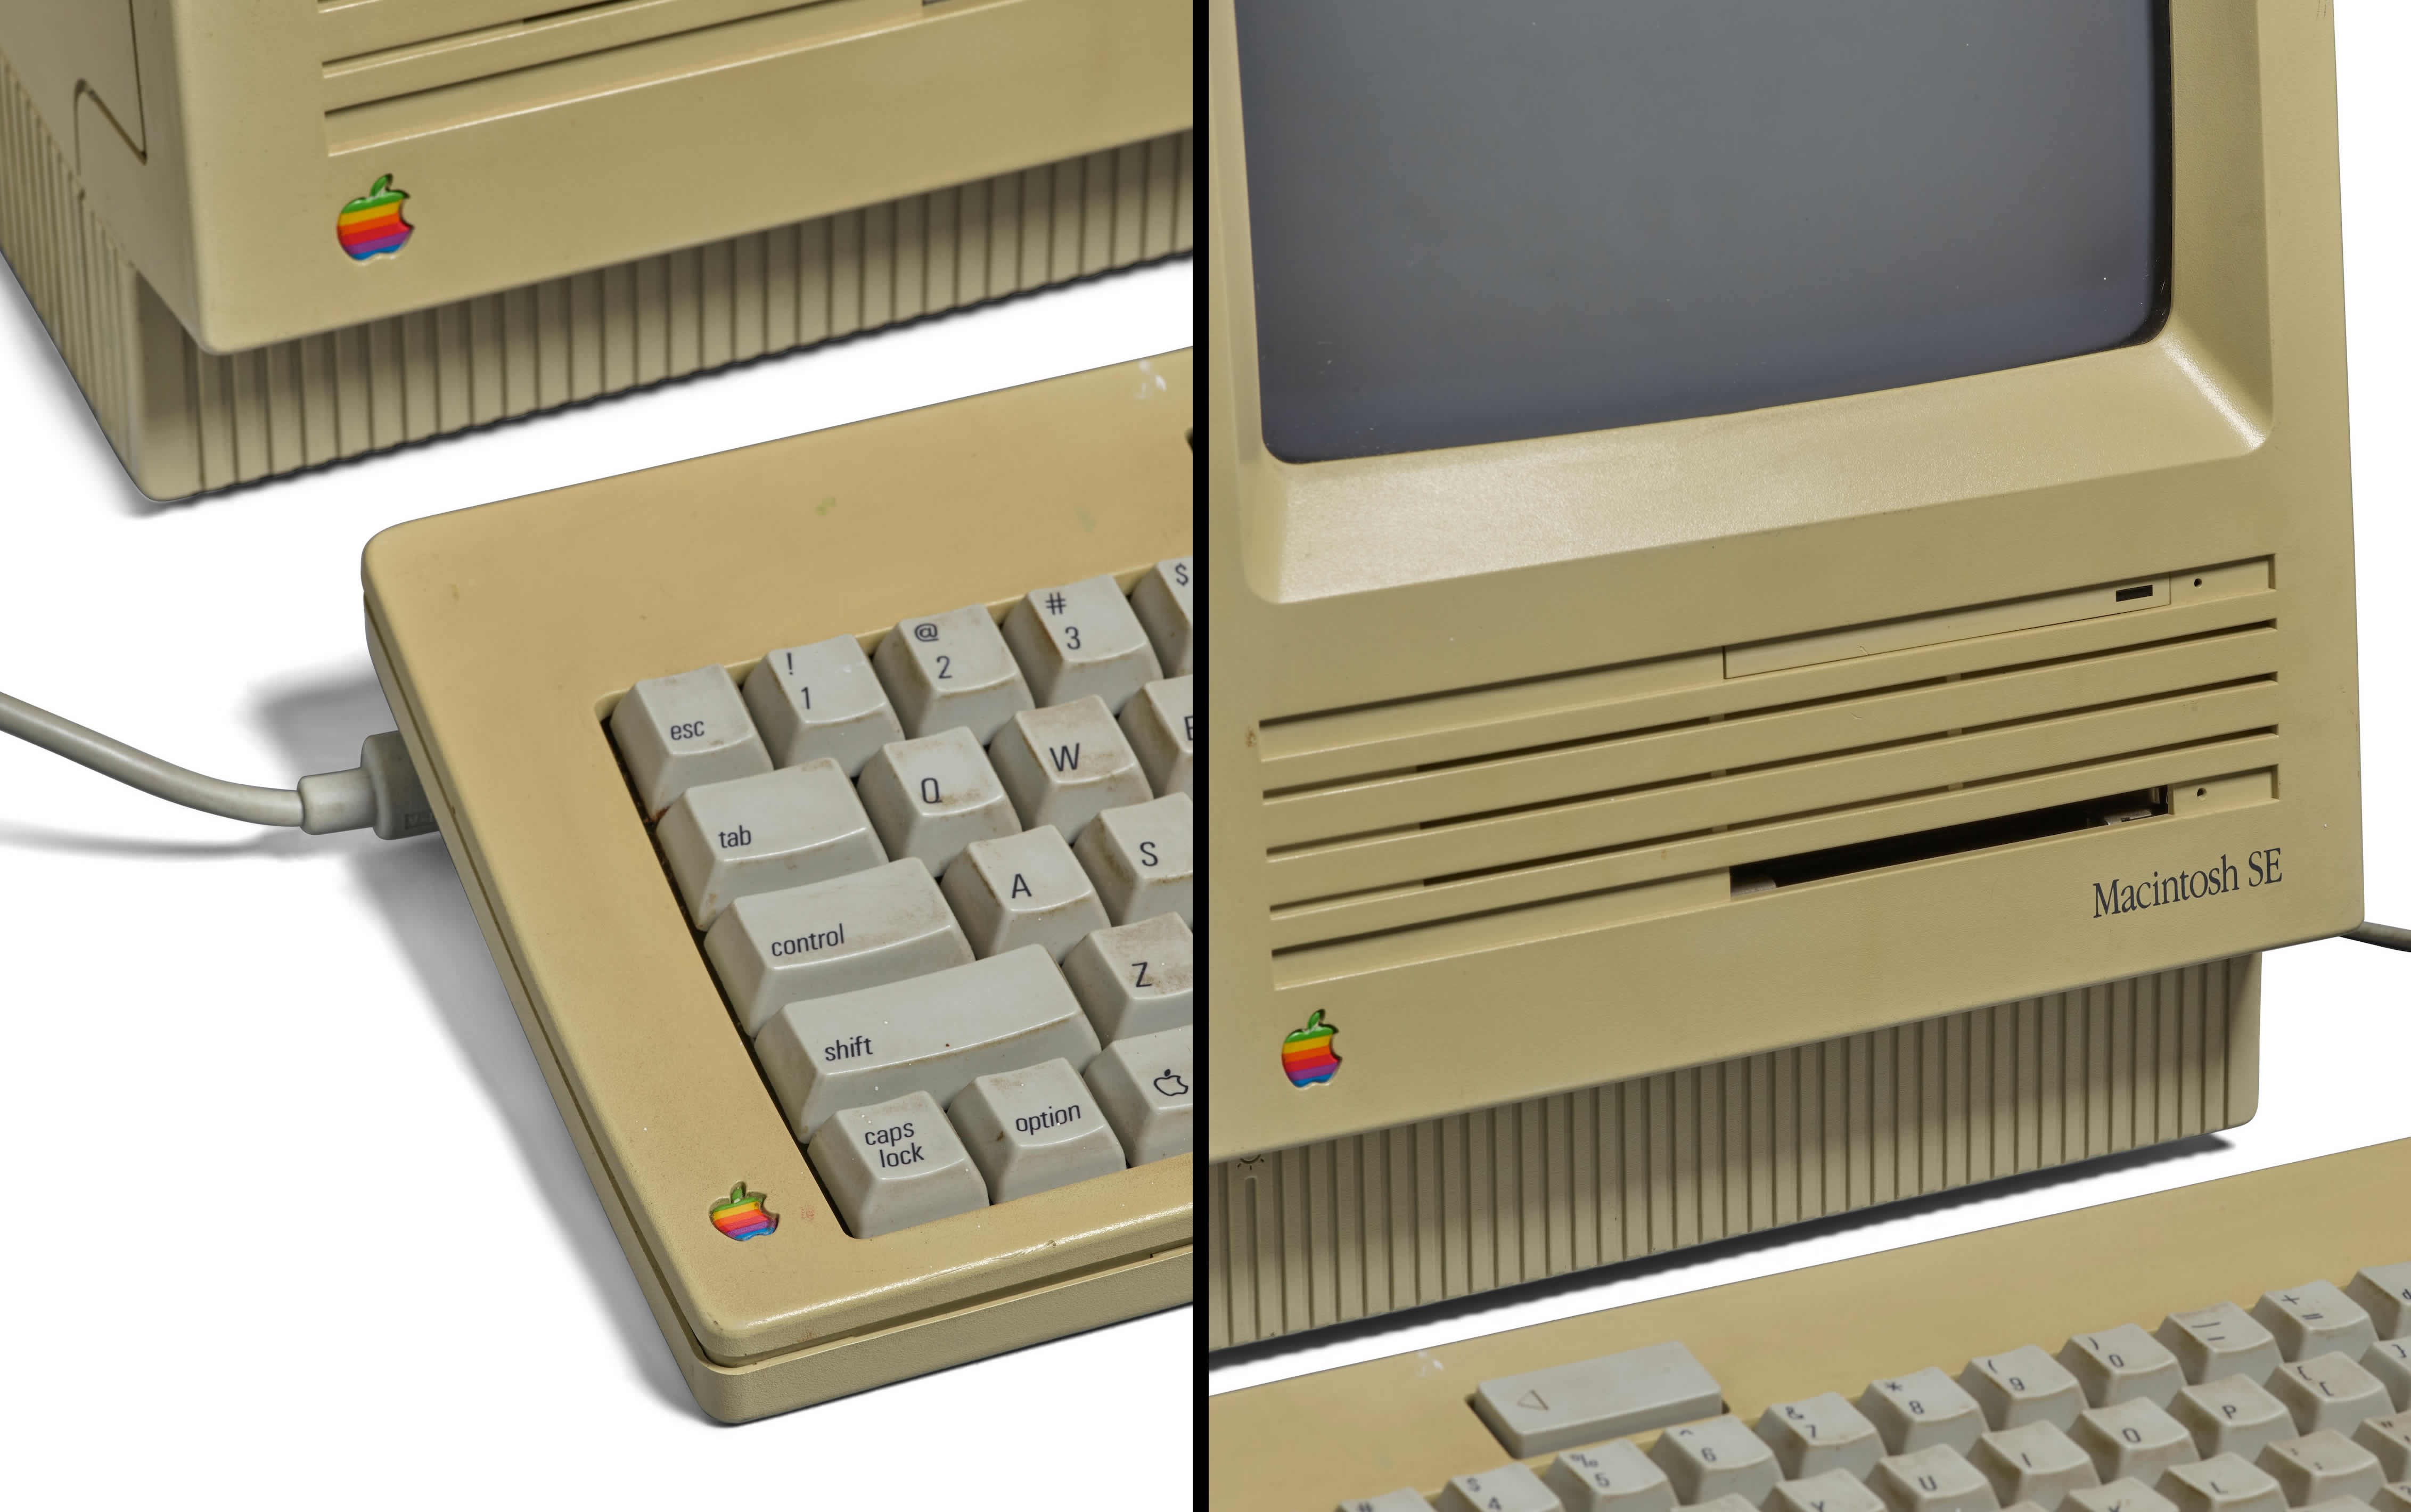 Steve Jobs'un Macintosh'u, 200 bin dolara açık artırmaya çıkıyor